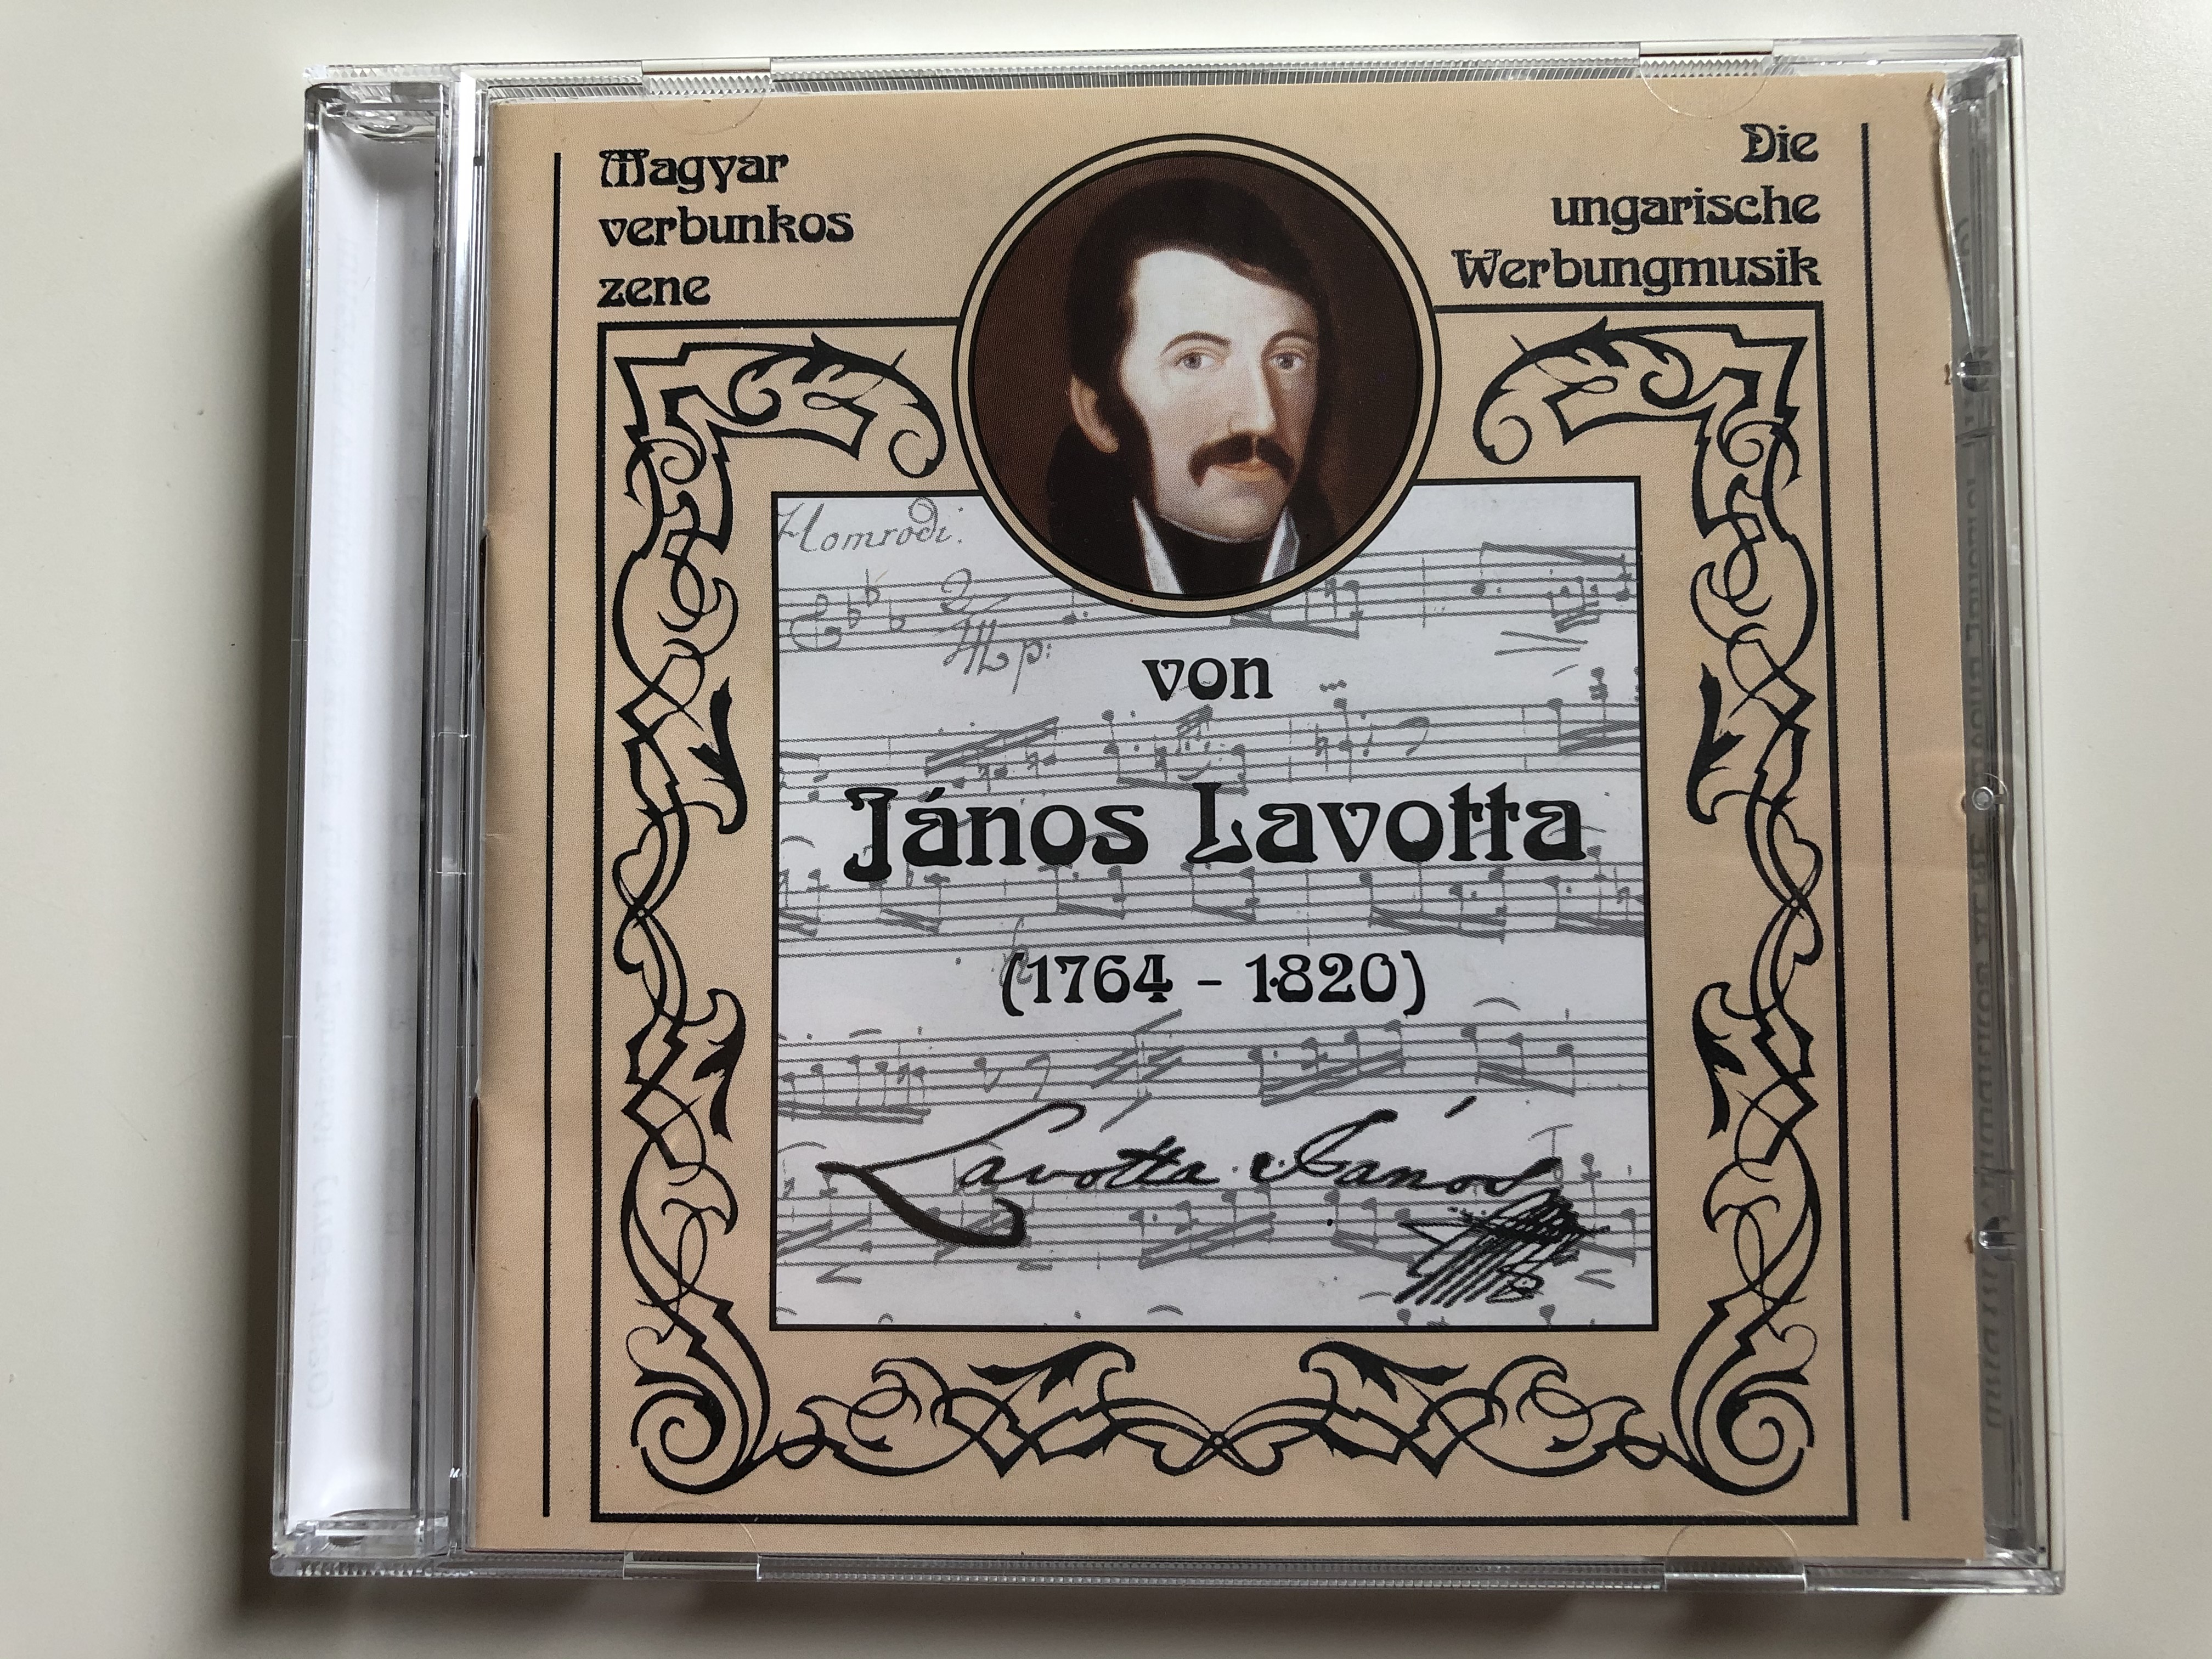 magyar-verbunkos-zene-von-janos-lavotta-1764-1820-preludio-audio-cd-precd-9506-1-.jpg